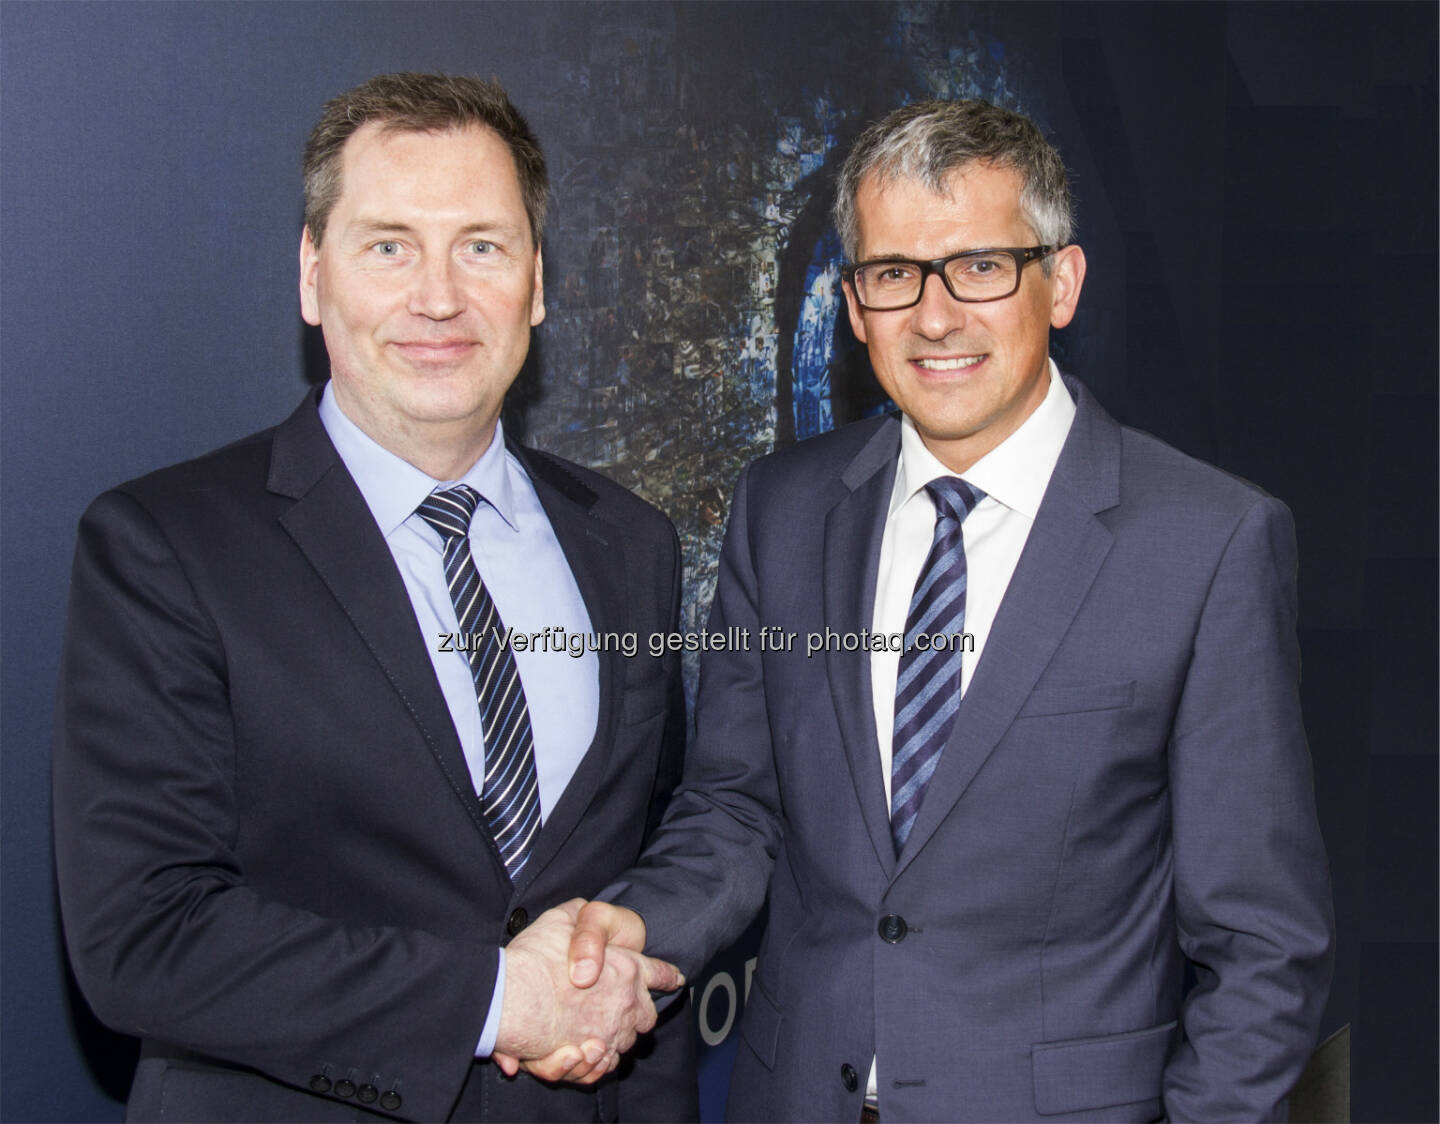 Henri Kirchhof und Jürgen Antonitsch - Gaisberg Consulting GmbH: Henri Kirchhof neuer CTO der ZKW Group (Fotocredit: ZKW)